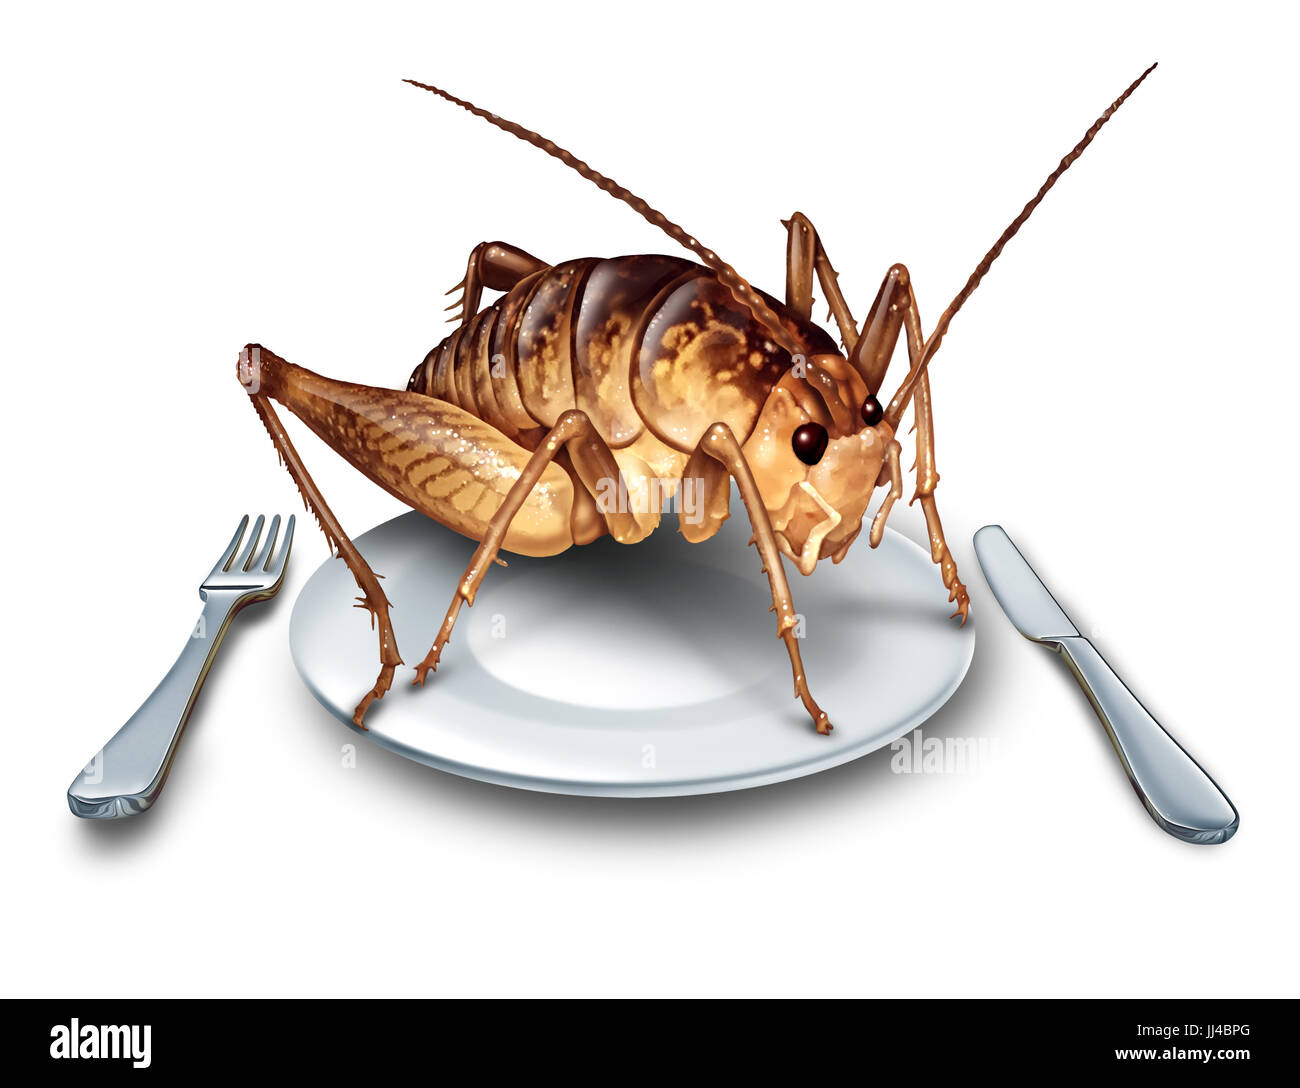 Mangiare i bug e mangia insetti come cucina esotica e alternativa proteina alta nutrition food come un grillo insetto in una piastra con coltello e forchetta. Foto Stock